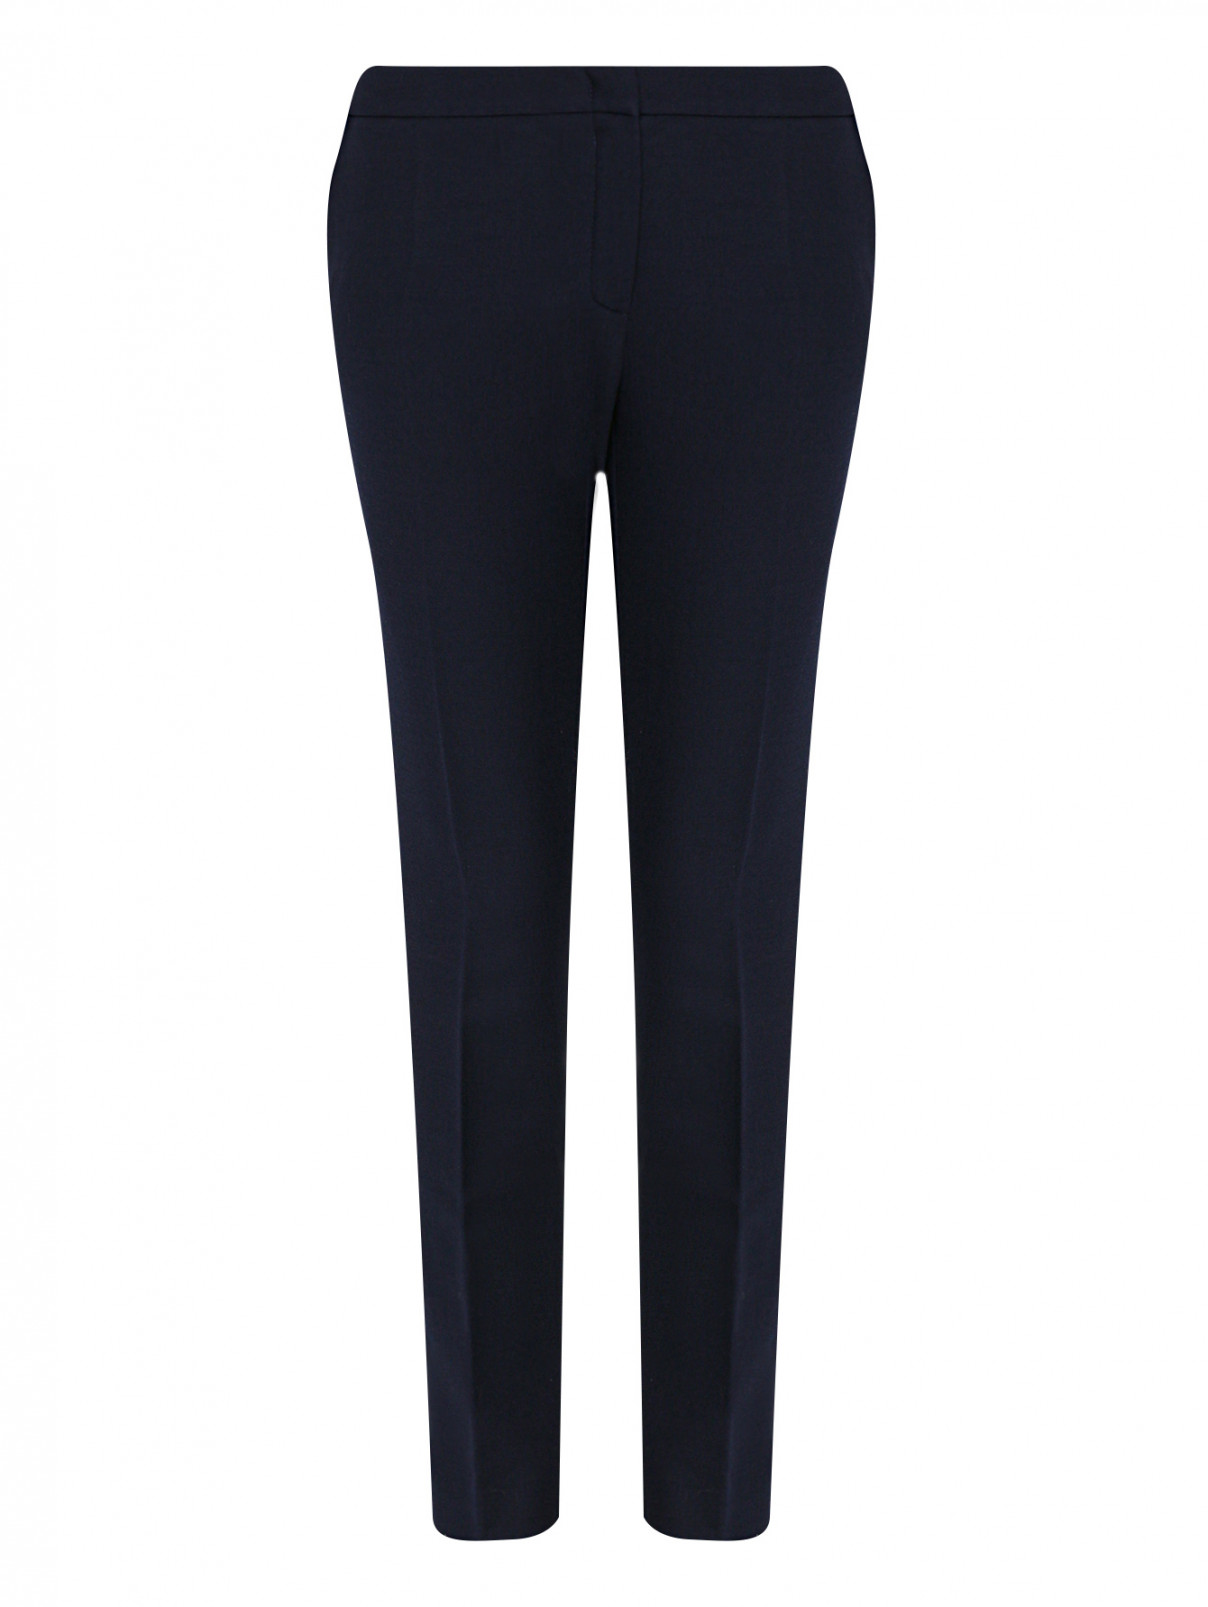 Укороченные брюки из шерсти с карманами Luisa Spagnoli  –  Общий вид  – Цвет:  Синий